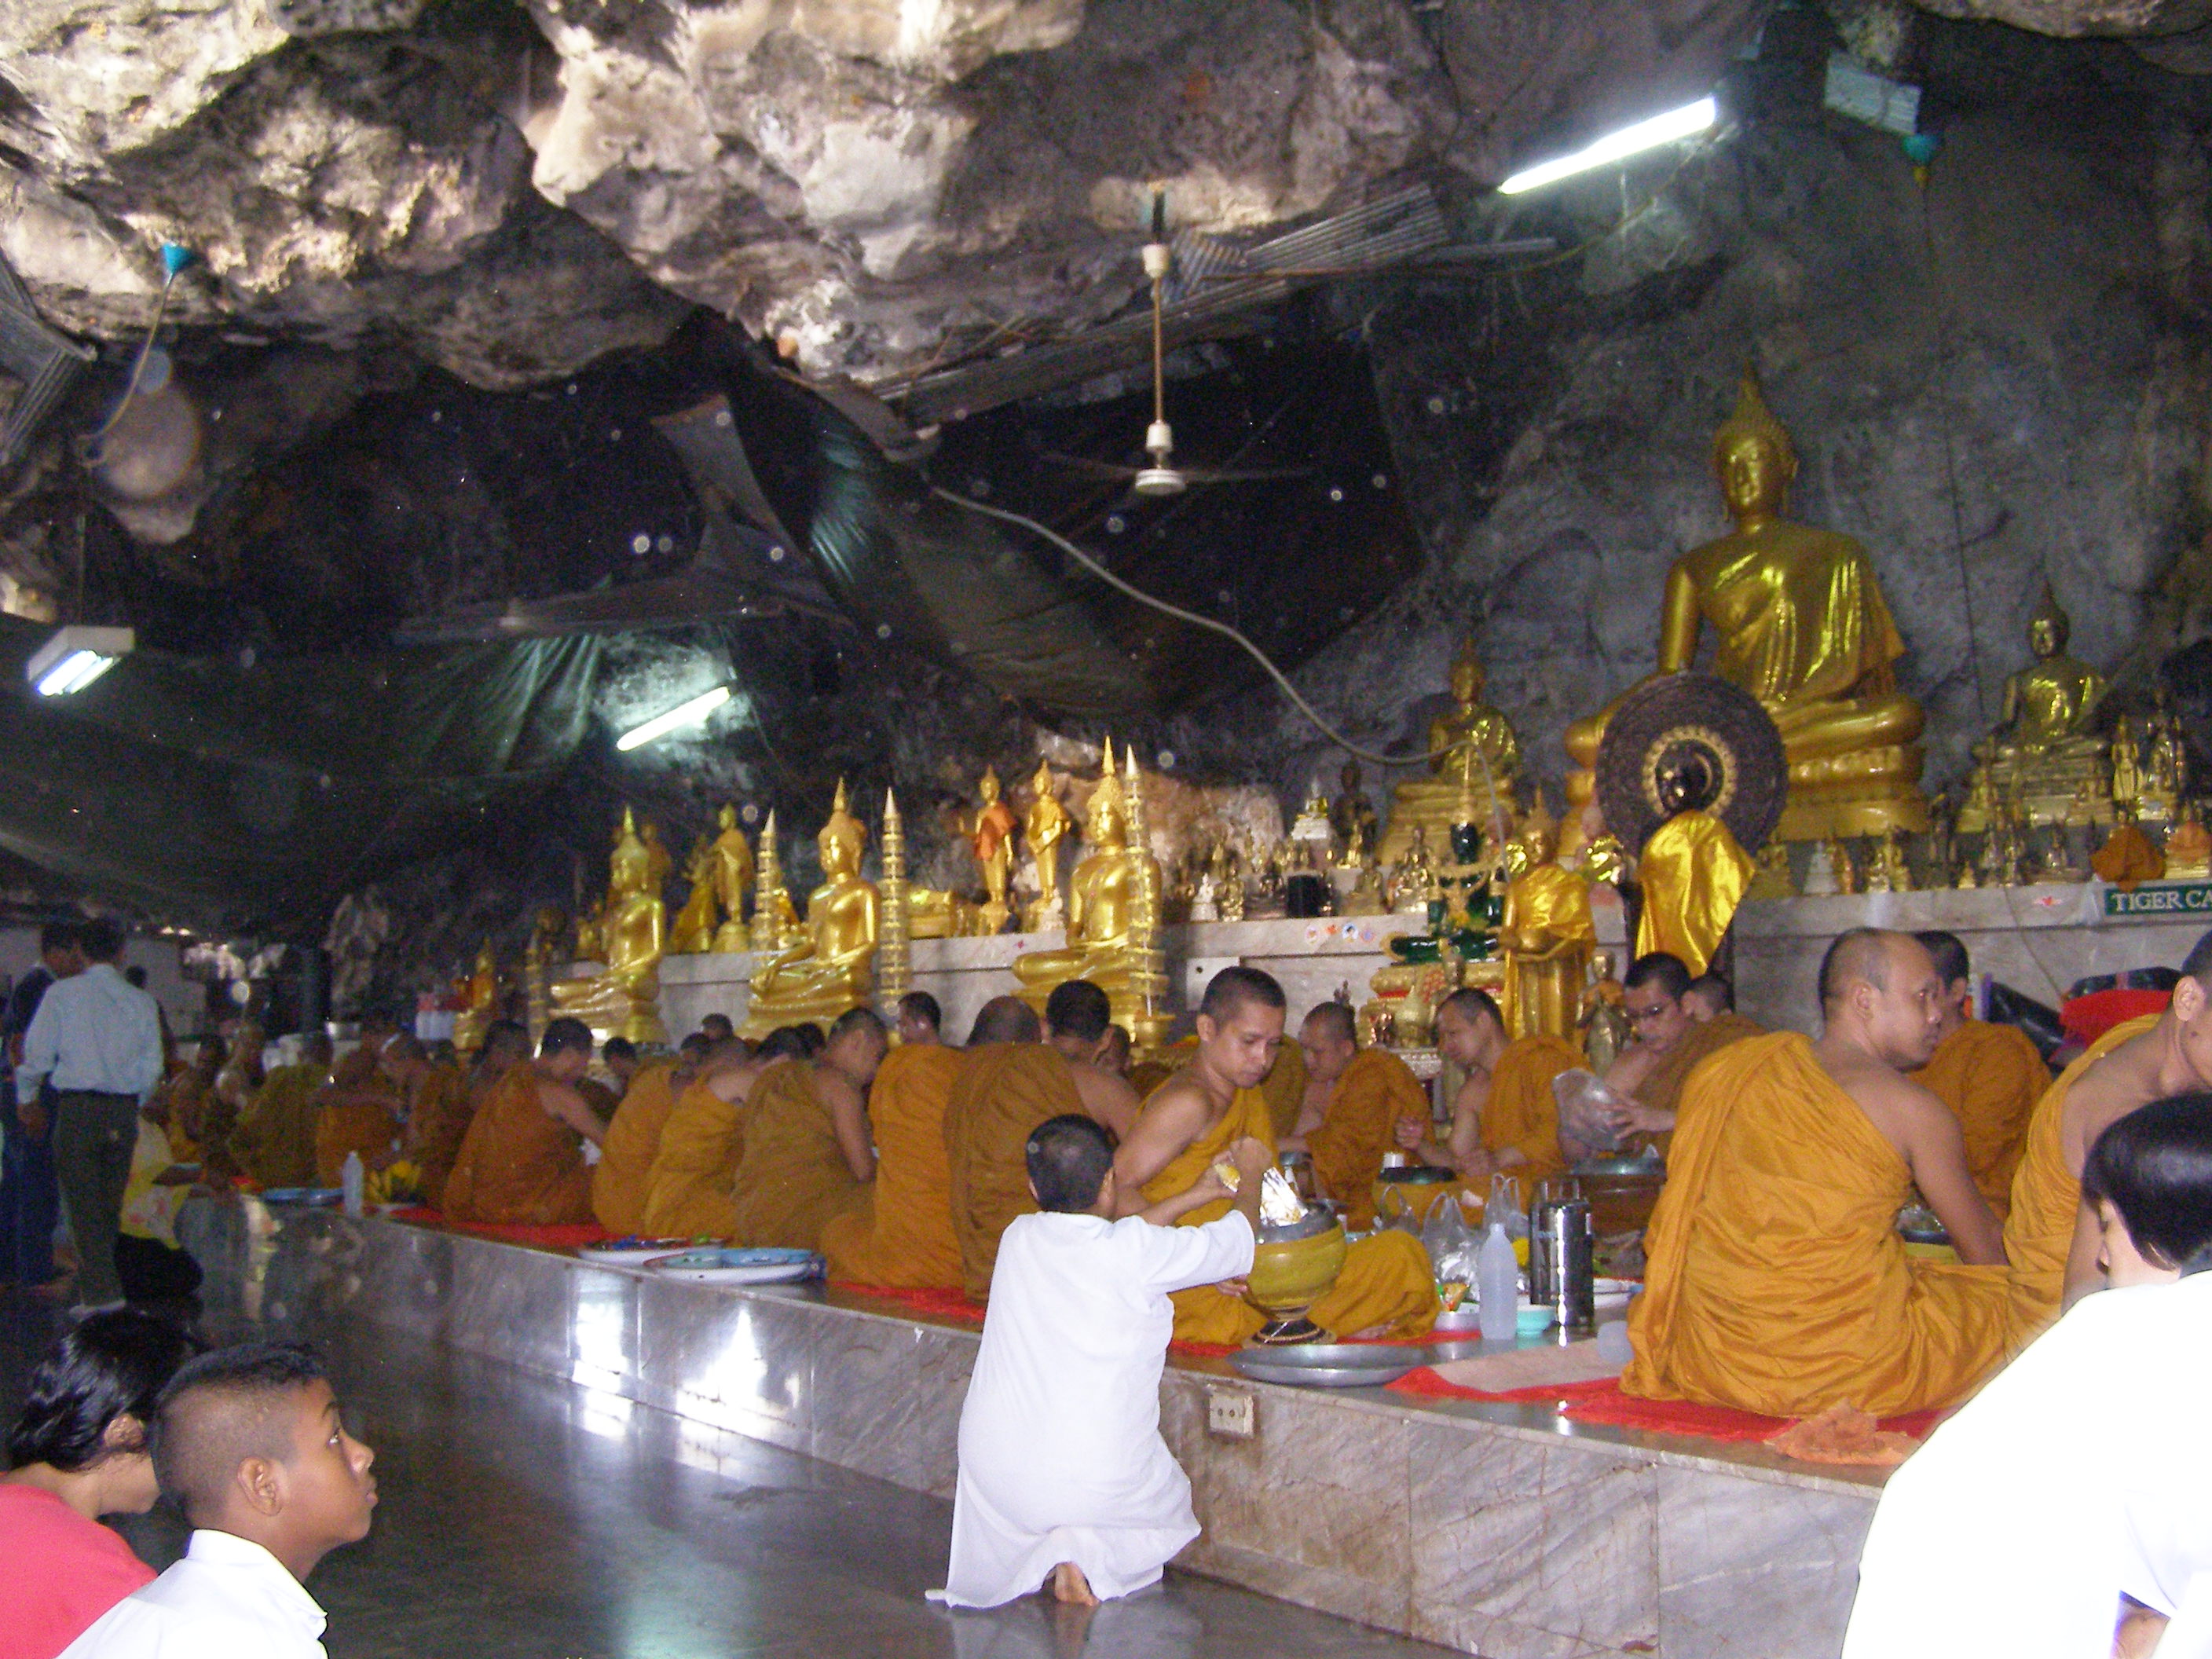 Buddhisticky chram v skalach - wat